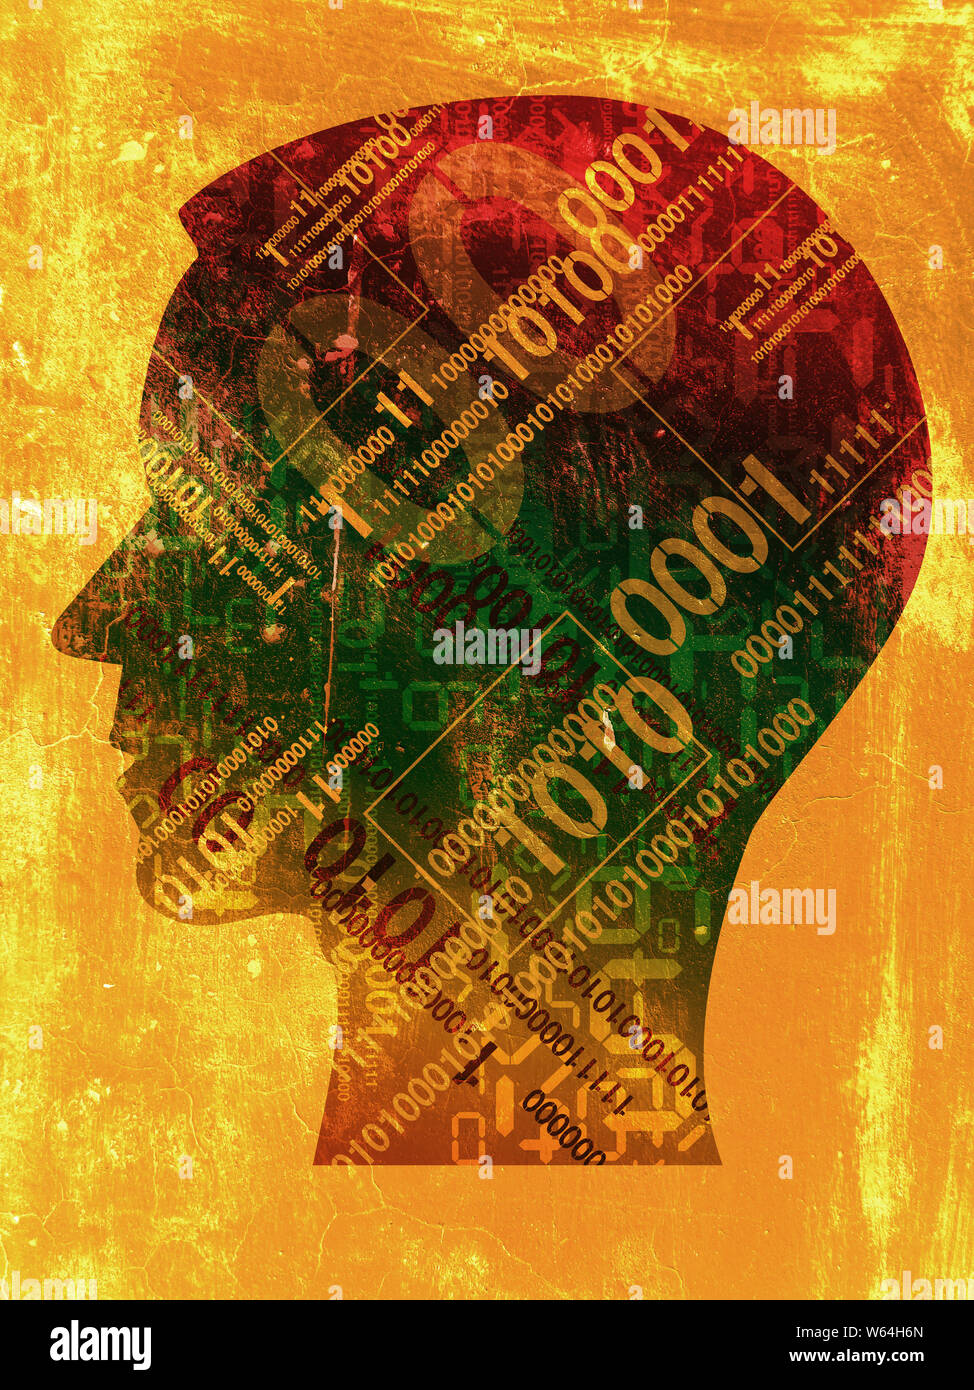 Burn-out-Syndrom, Stress, Computer-Experte. Männliche Kopf stilisierte Silhouette mit binären Codes, auf grunge Hintergrund. Stockfoto